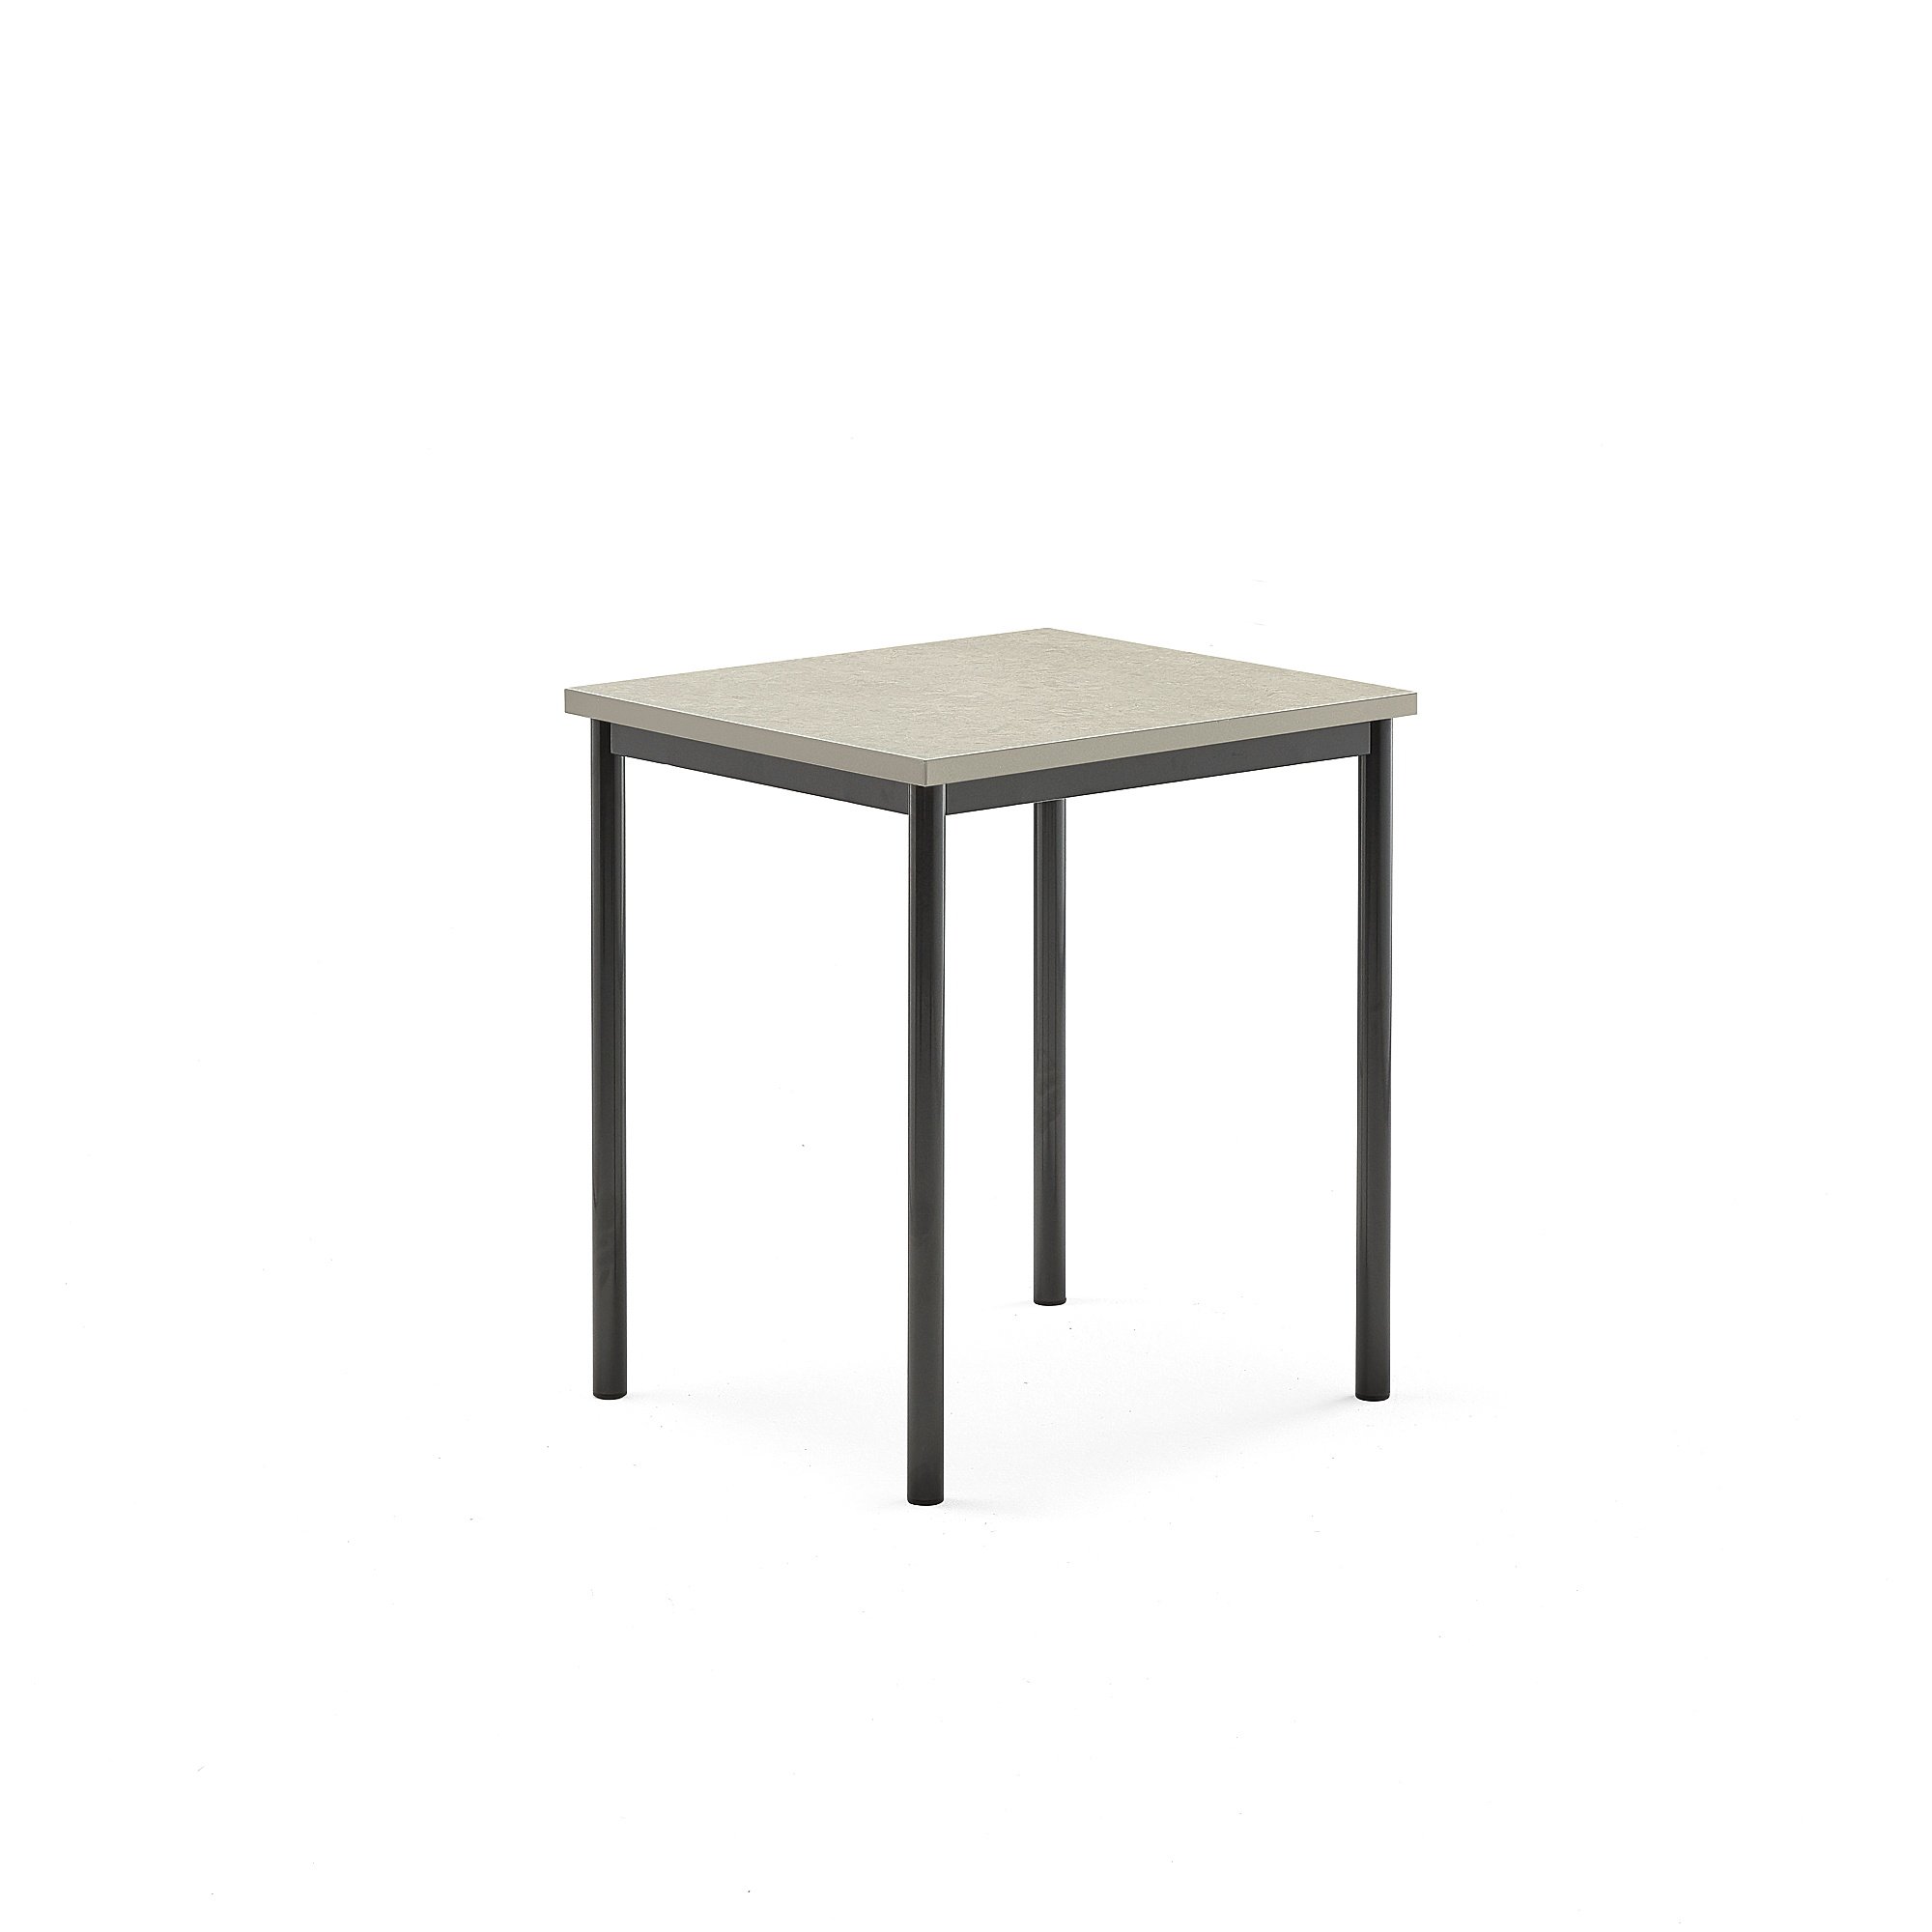 Stůl SONITUS, 700x600x760 mm, antracitově šedé nohy, deska s linoleem, šedá